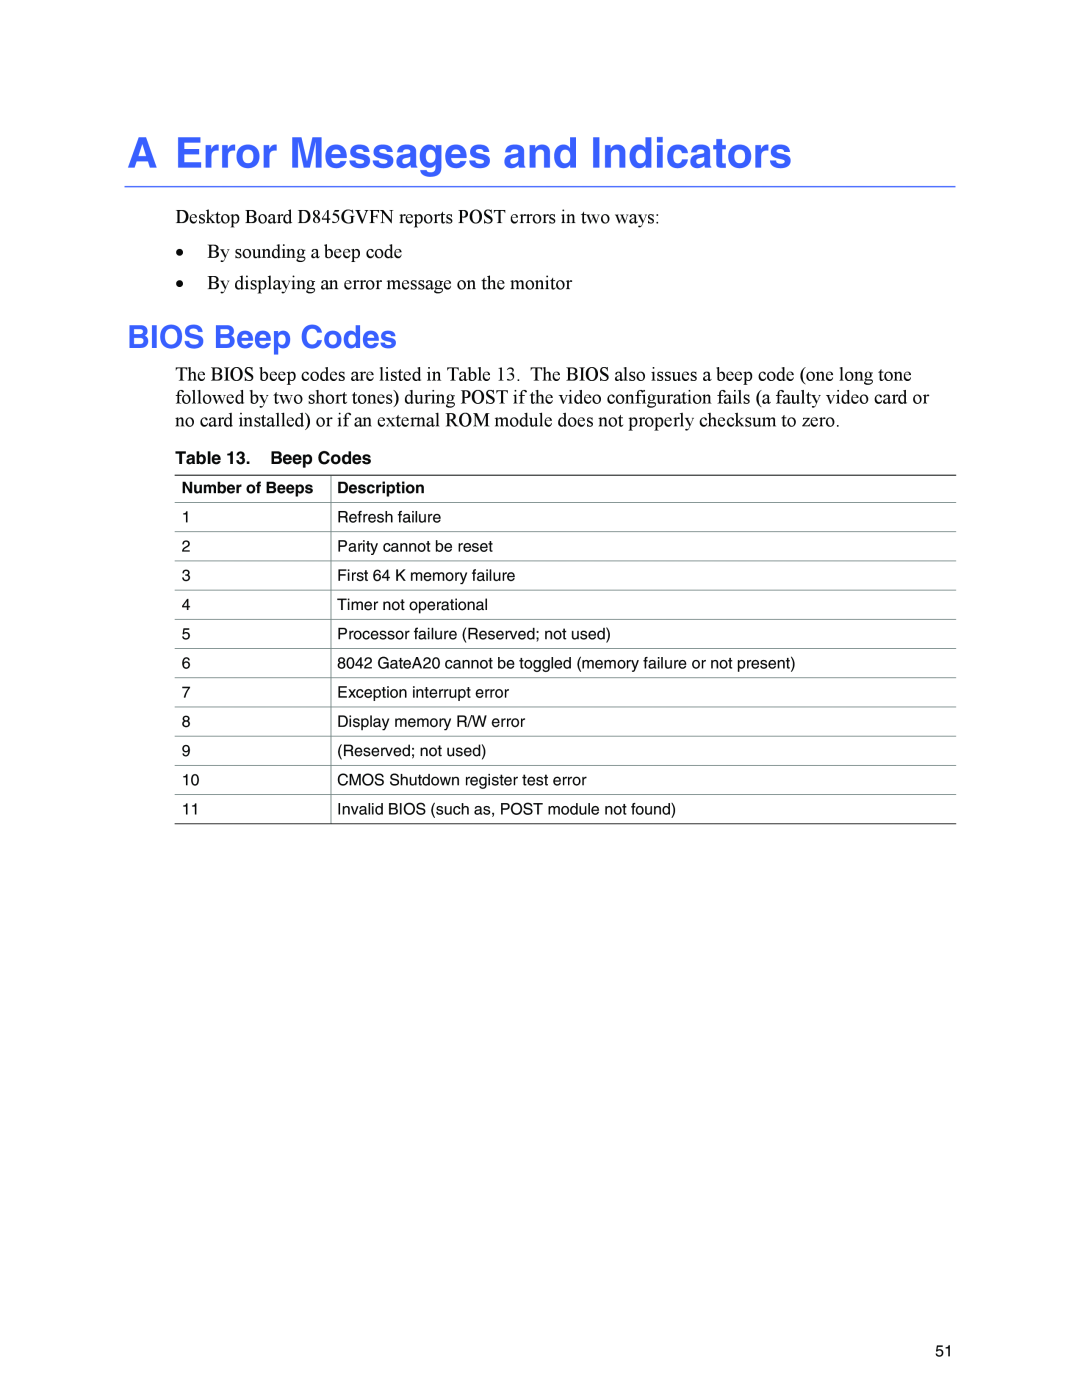 Intel D845GVFN manual A Error Messages and Indicators, BIOS Beep Codes 